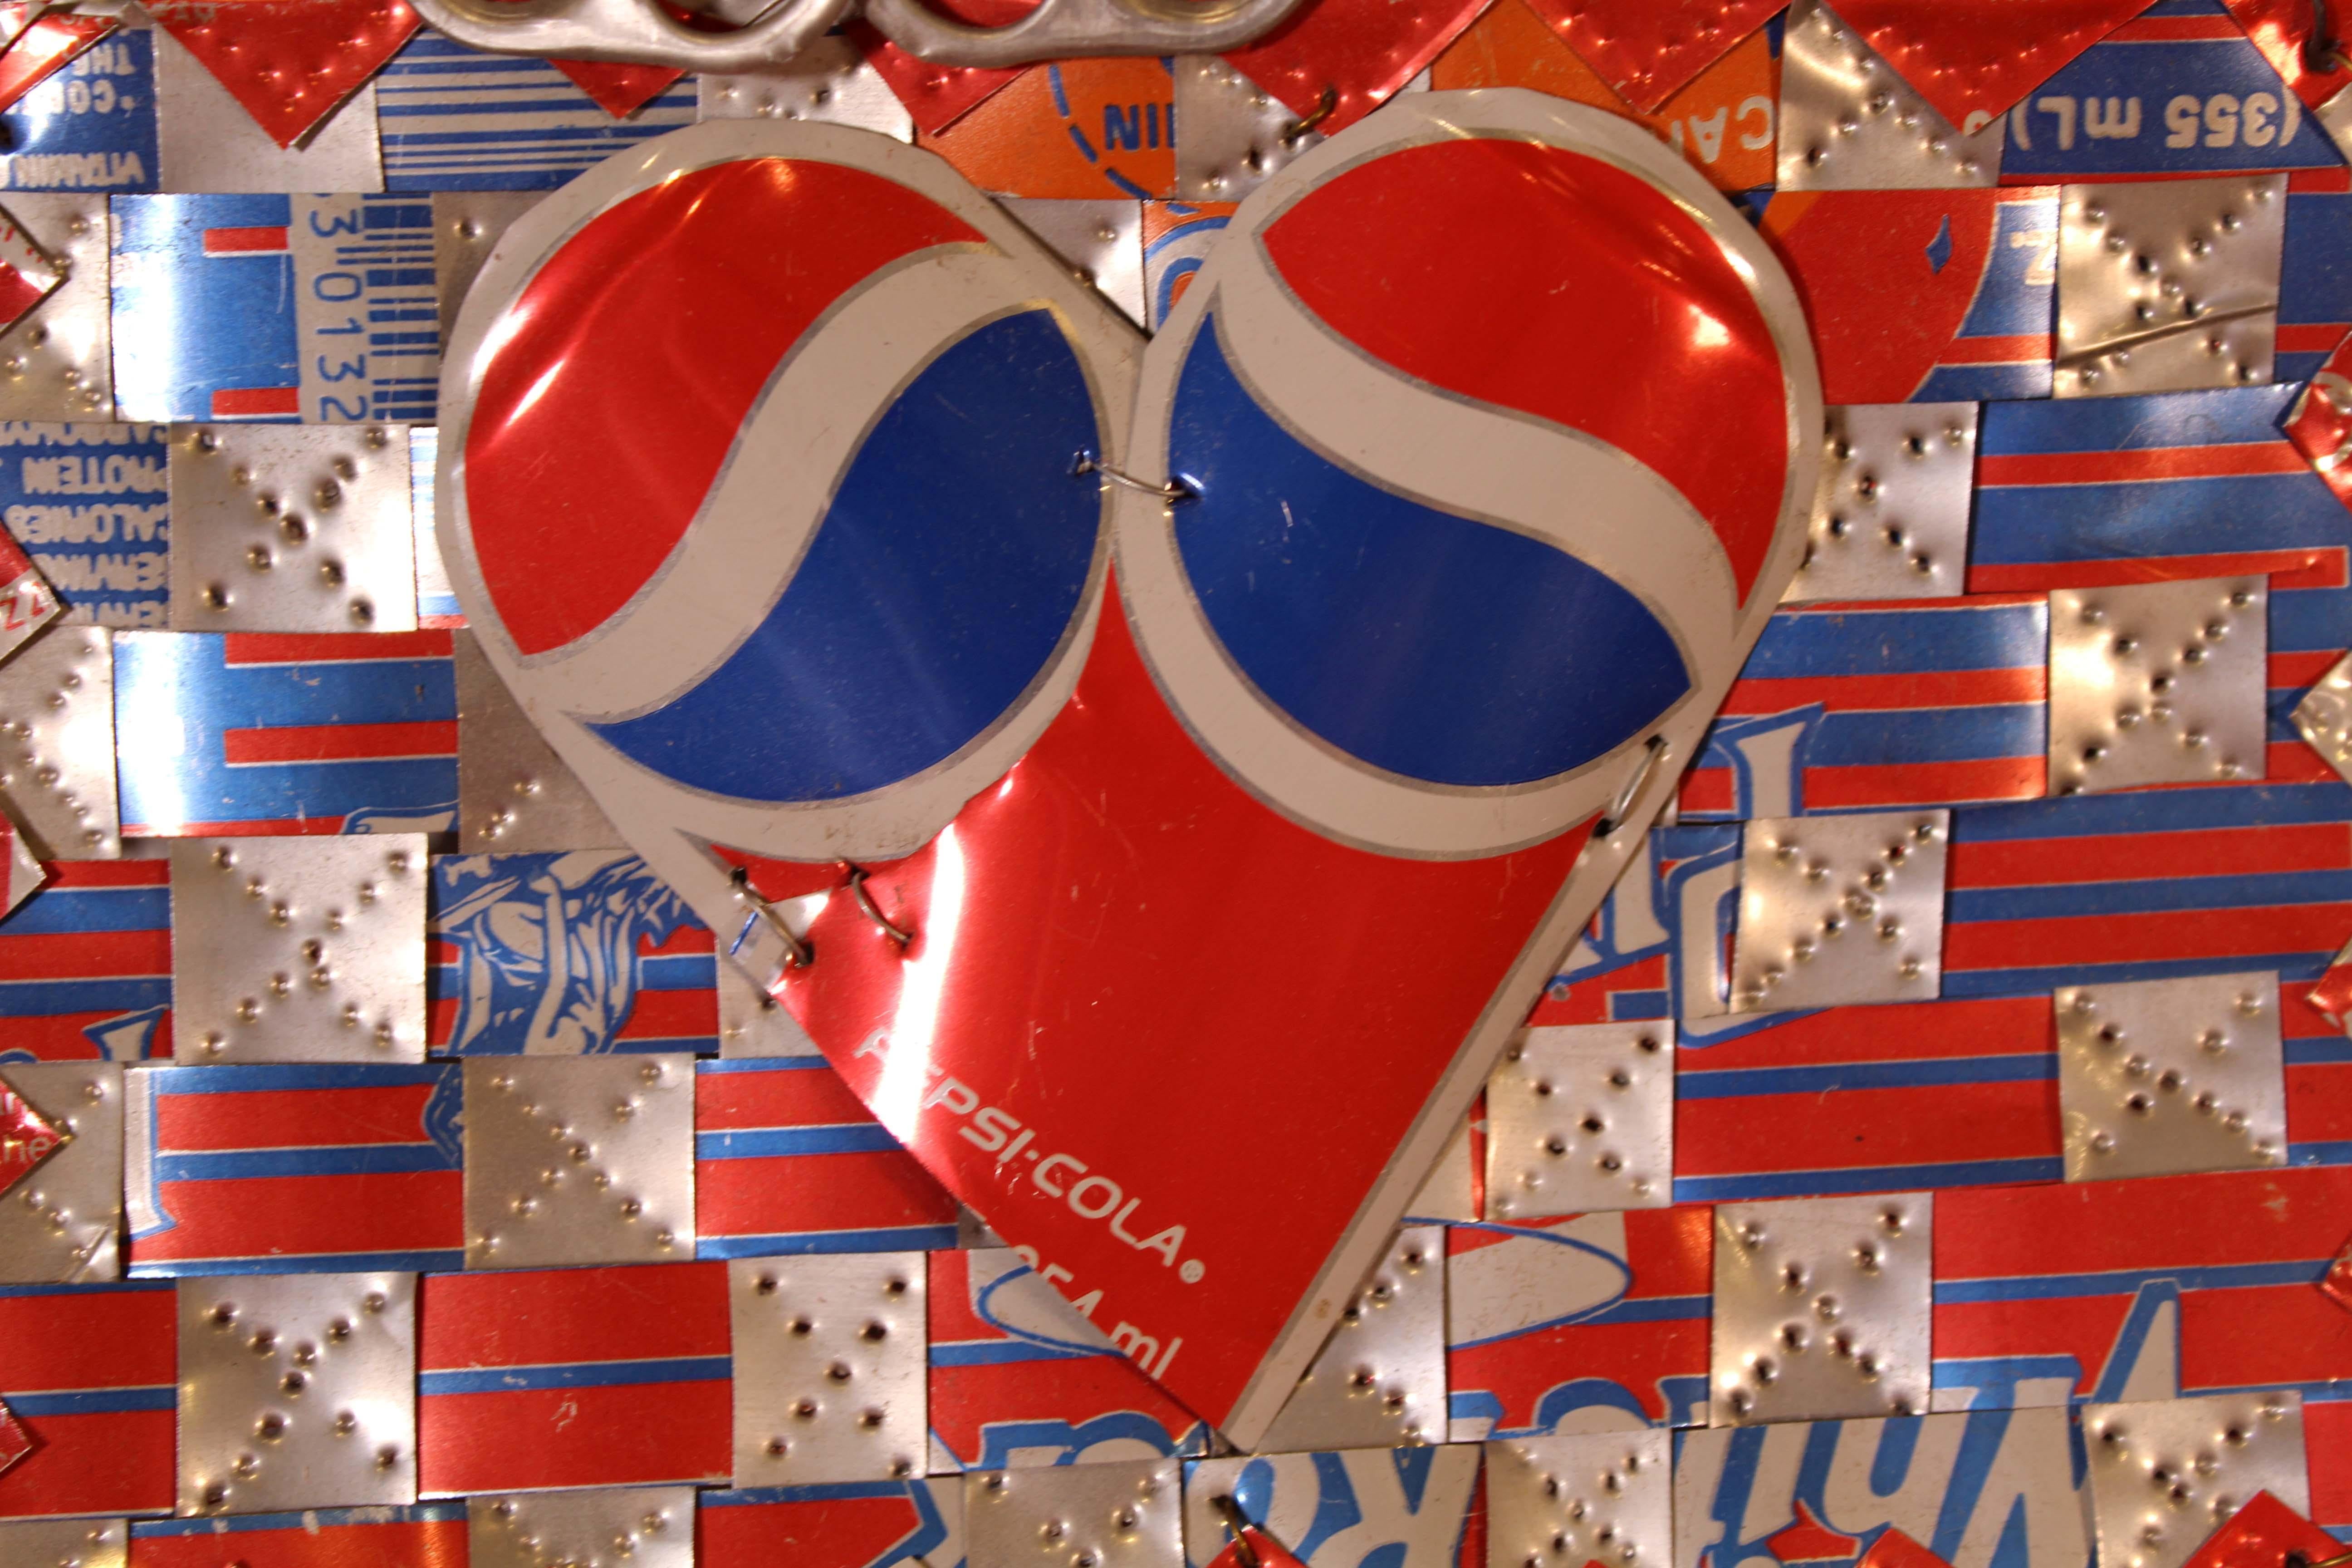 Eine einzigartige zeitgenössische Fundstück-Assemblage aus Pepsi- und Hawaii-Punch-Dosen des amerikanischen Künstlers Ross Palmer Beecher. Verso handschriftlich mit Edding signiert. Die Künstlerin hat Elemente von Dosen zu einem kleinen skulpturalen